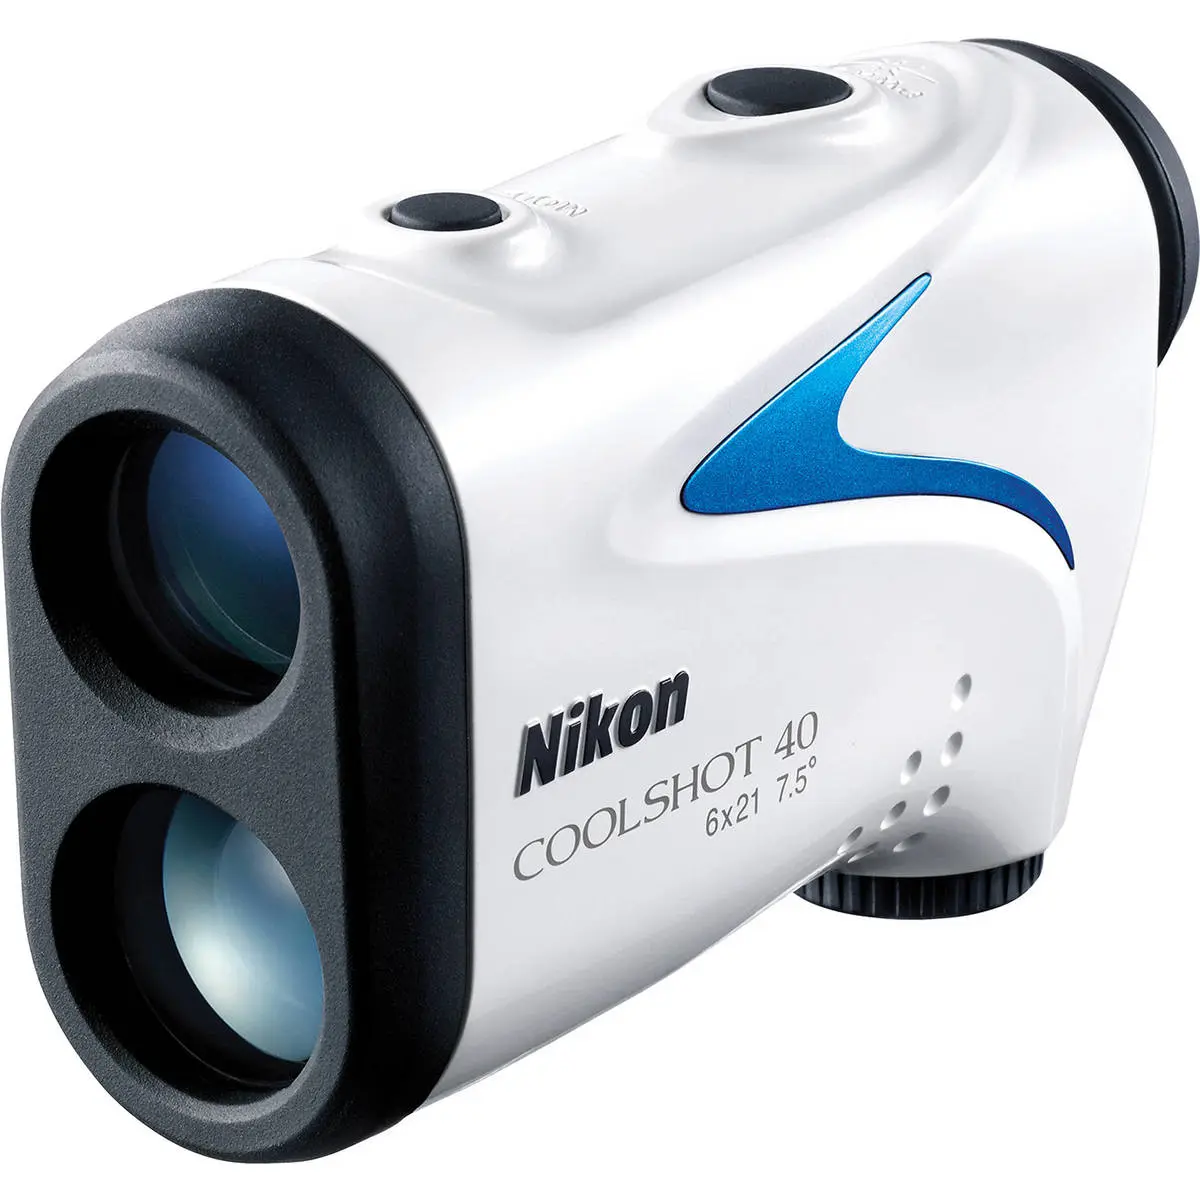 Main Image Nikon Coolshot 40 Golf Laser Rangefinder